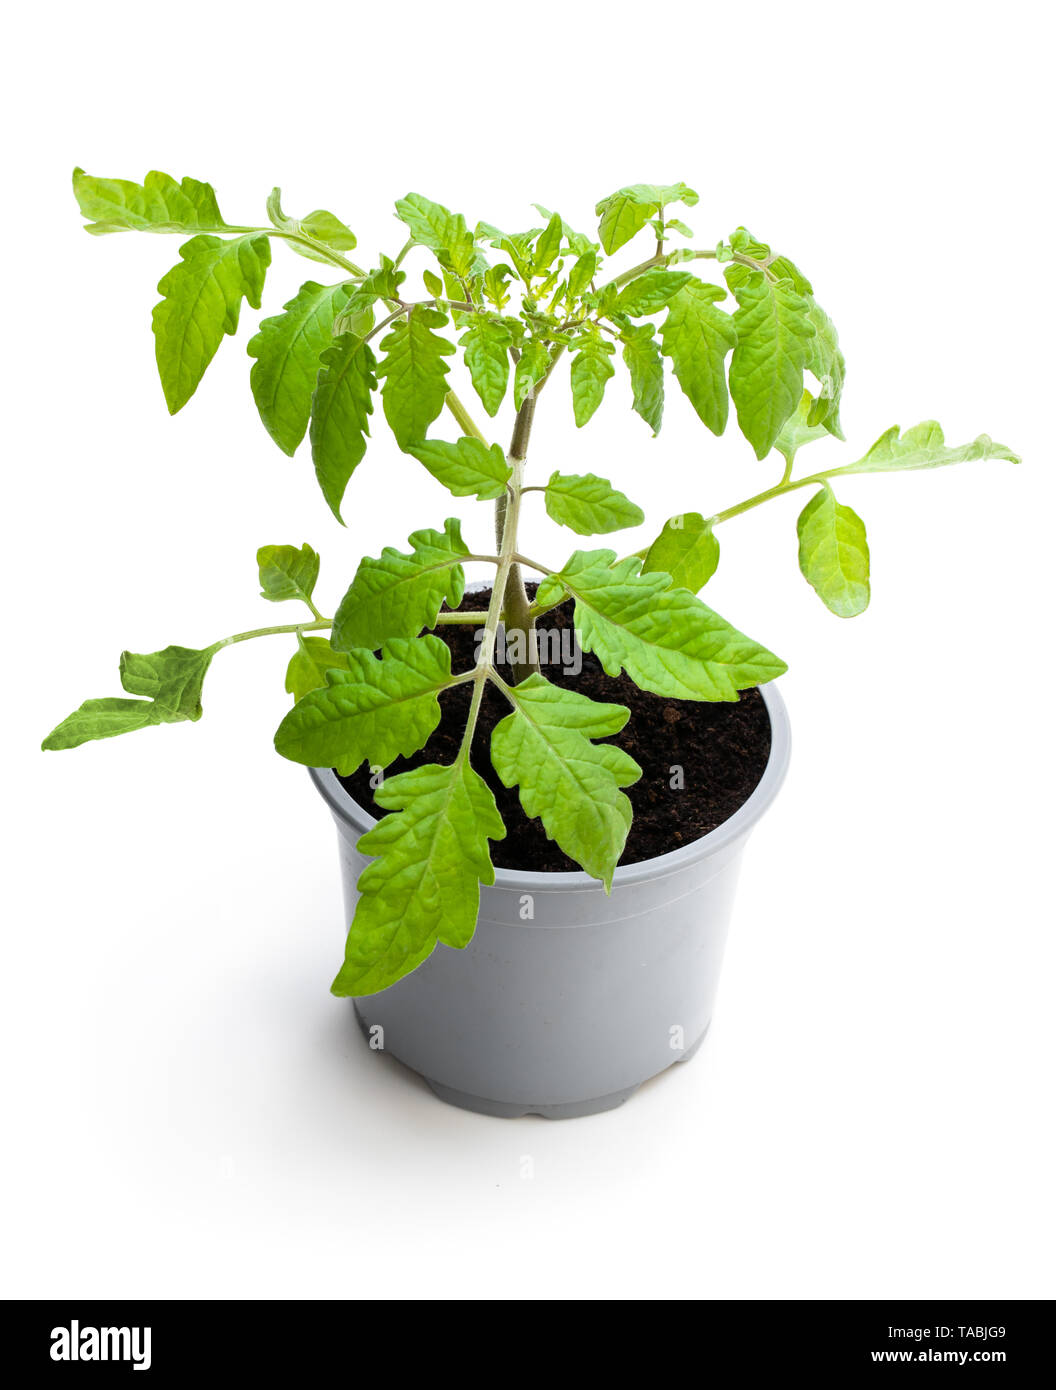 Plant de tomate en pot isolé sur fond blanc Banque D'Images